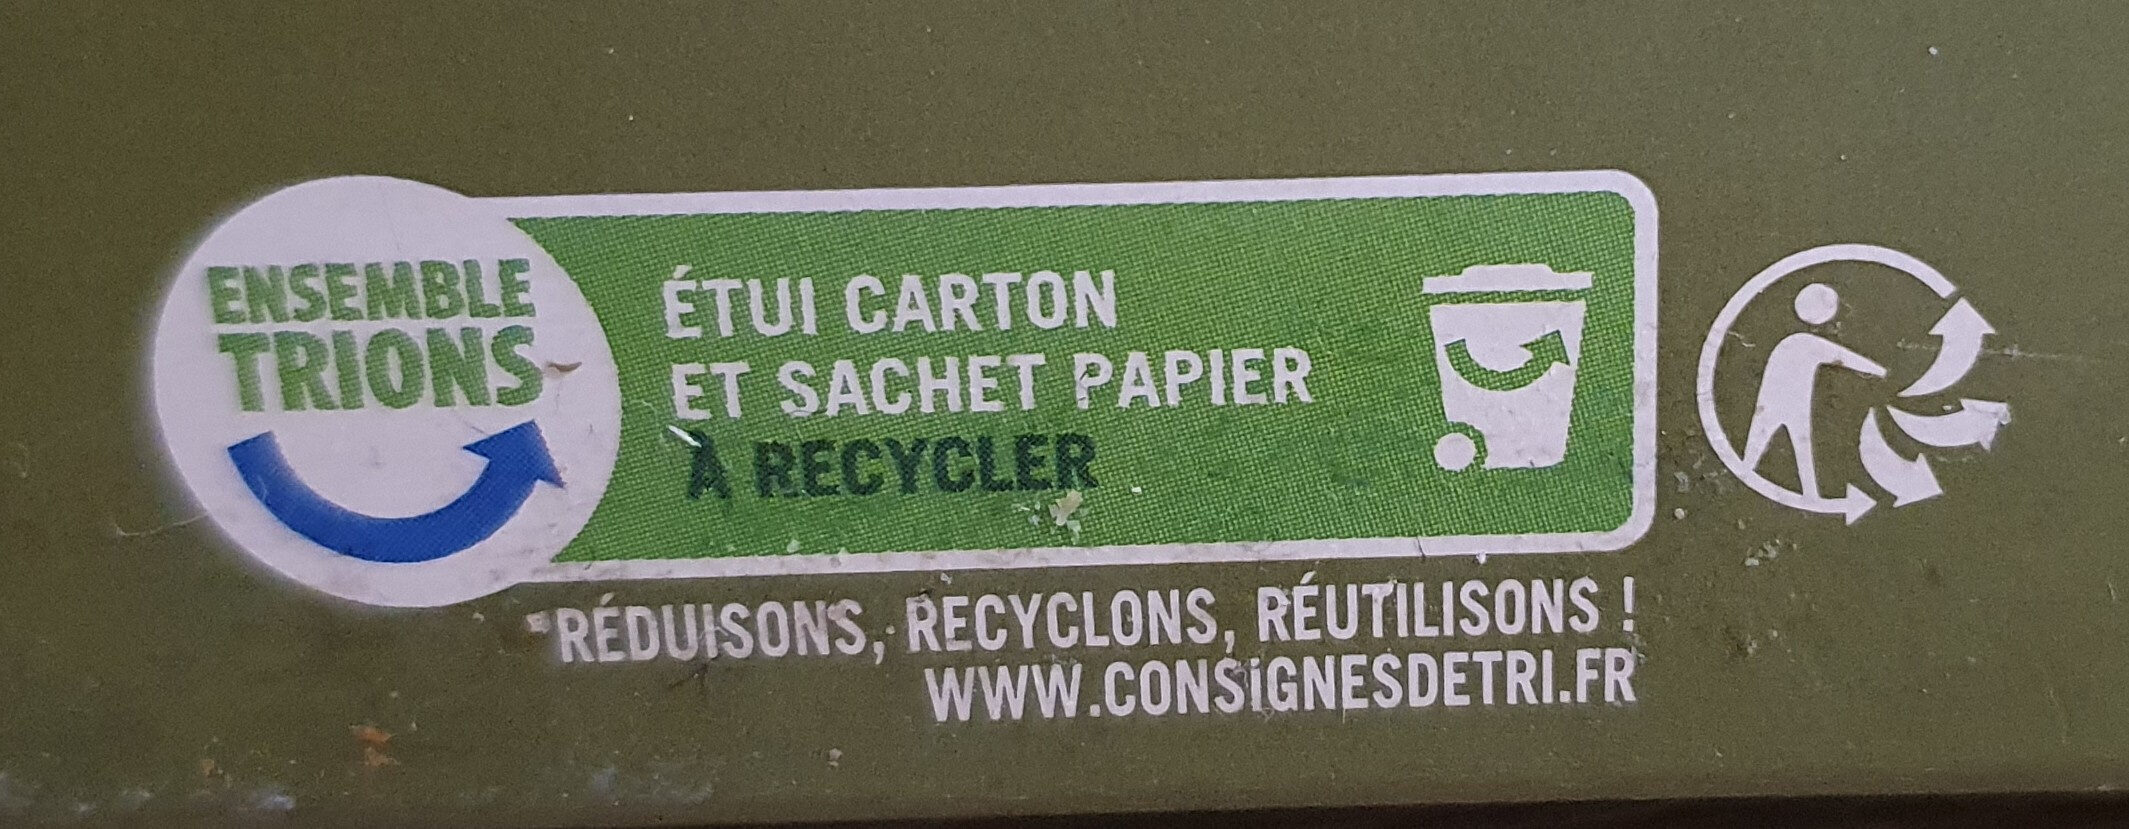 Flocons d'avoine - Grainéa - Instruction de recyclage et/ou informations d'emballage